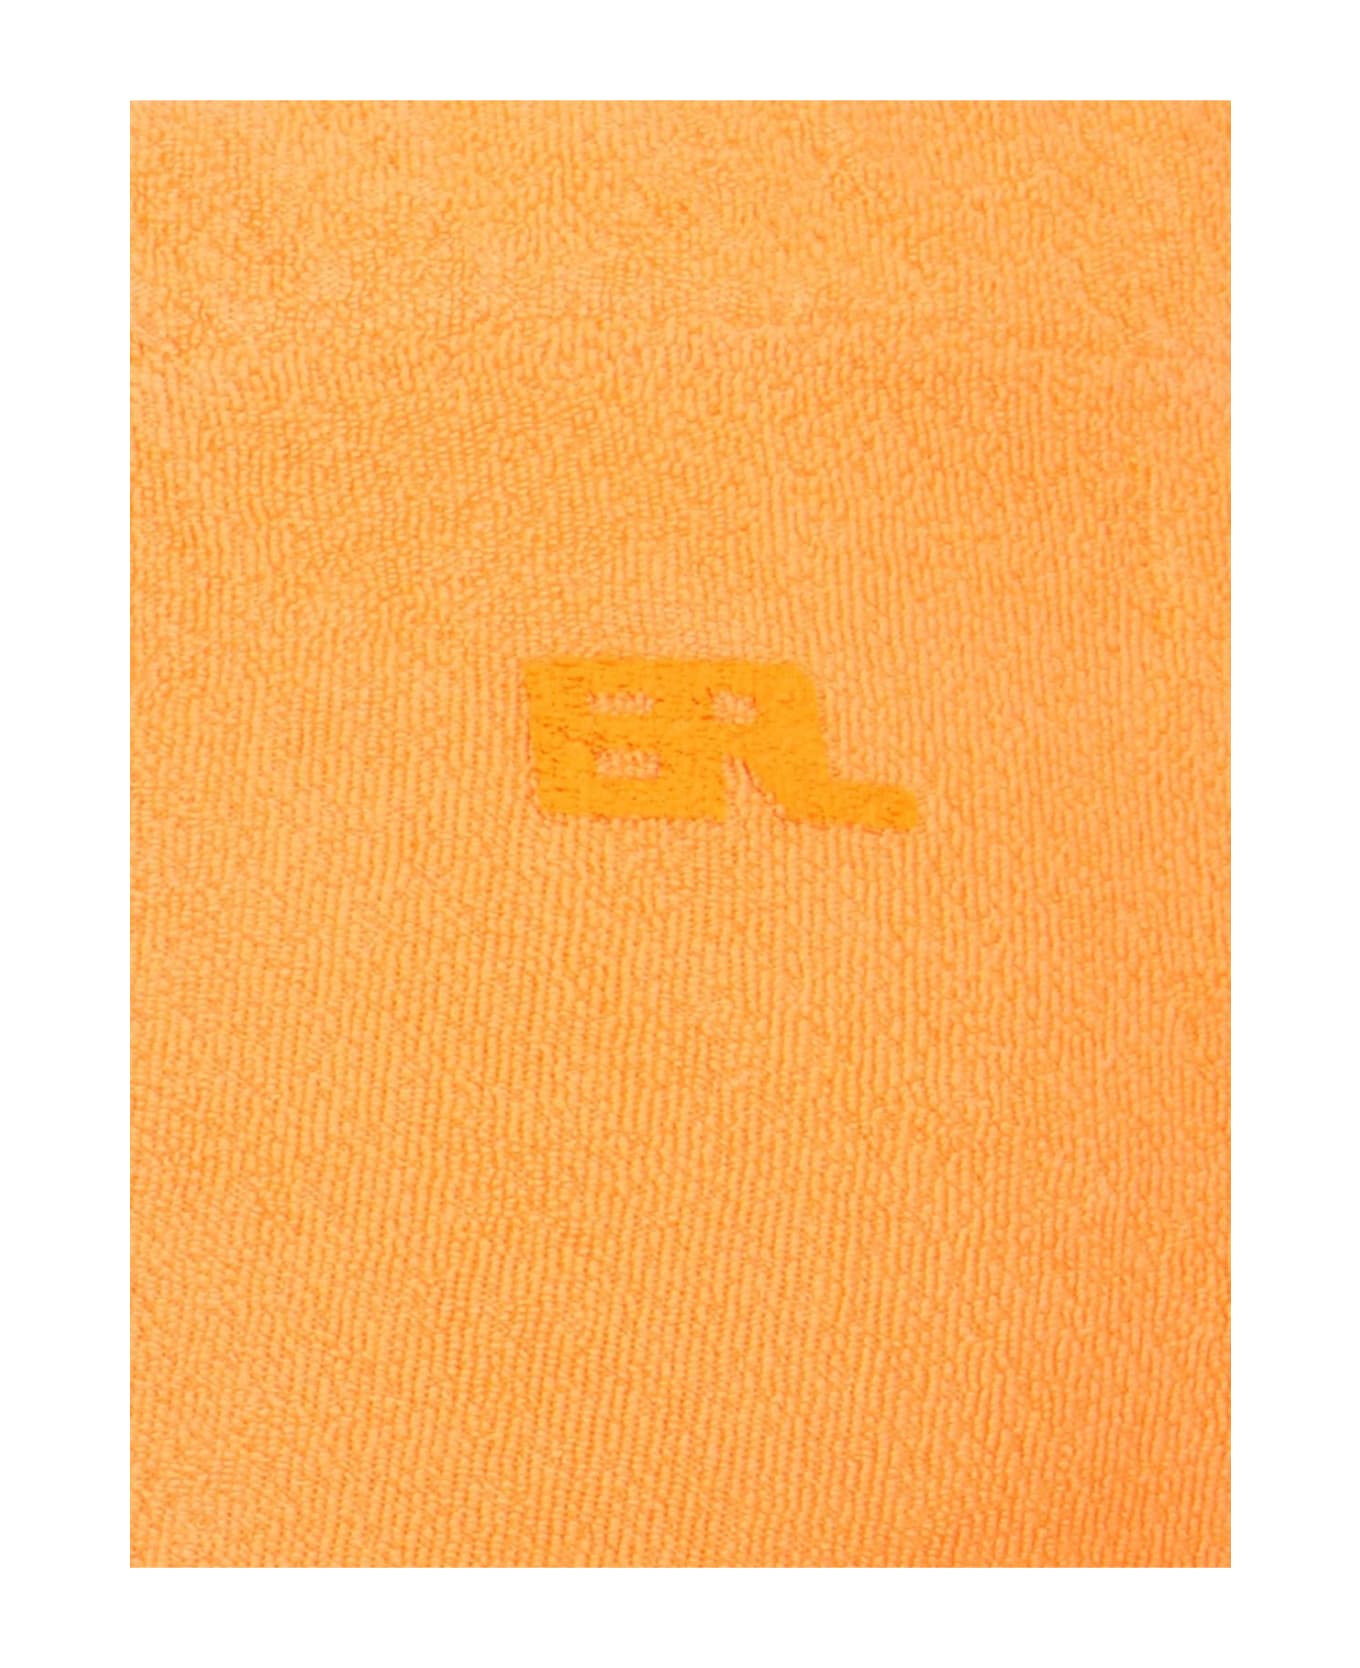 ERL Bootcut Pants - Orange ボトムス